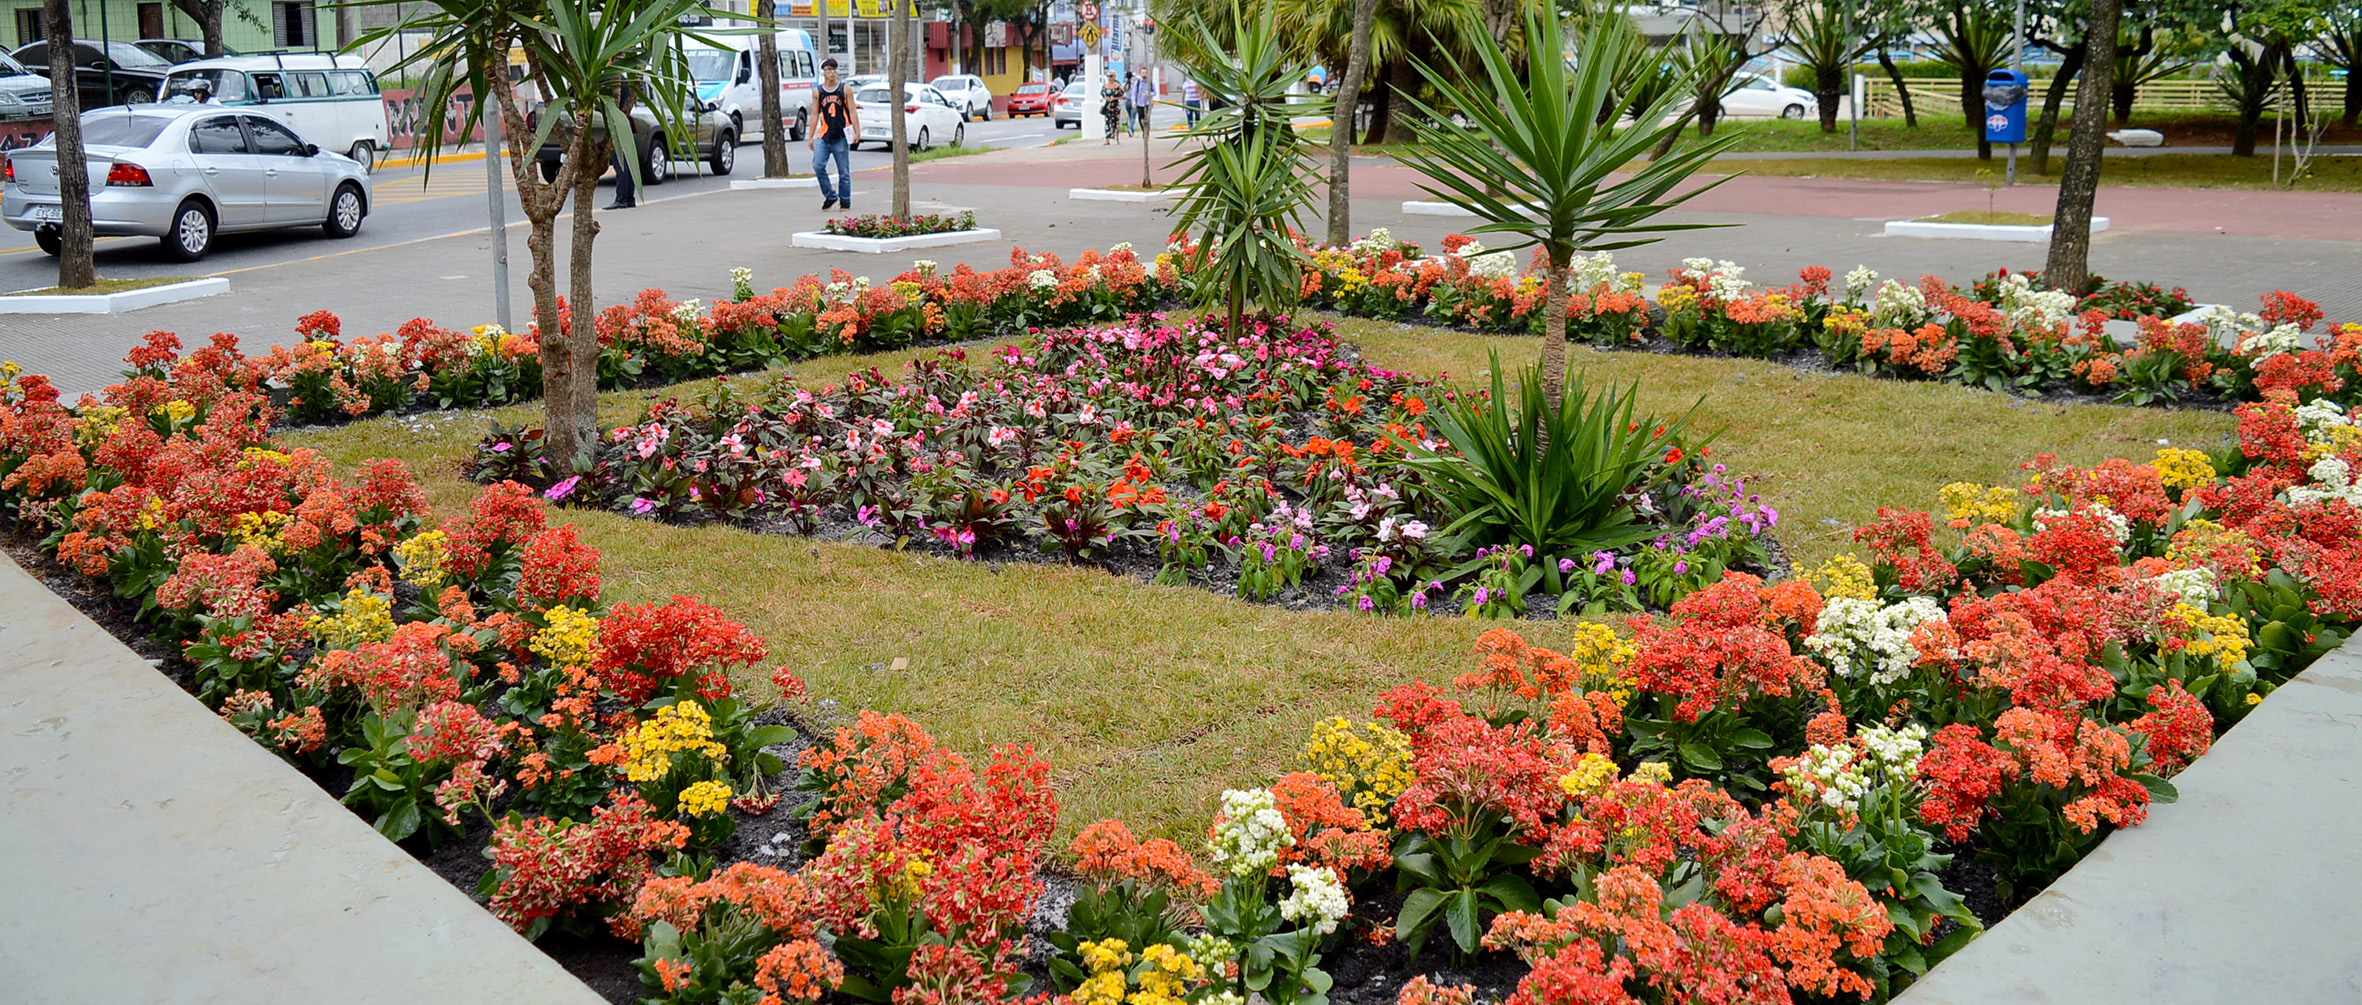 Moradores aprovam revitalização da Praça Cidade das Flores  Diário de